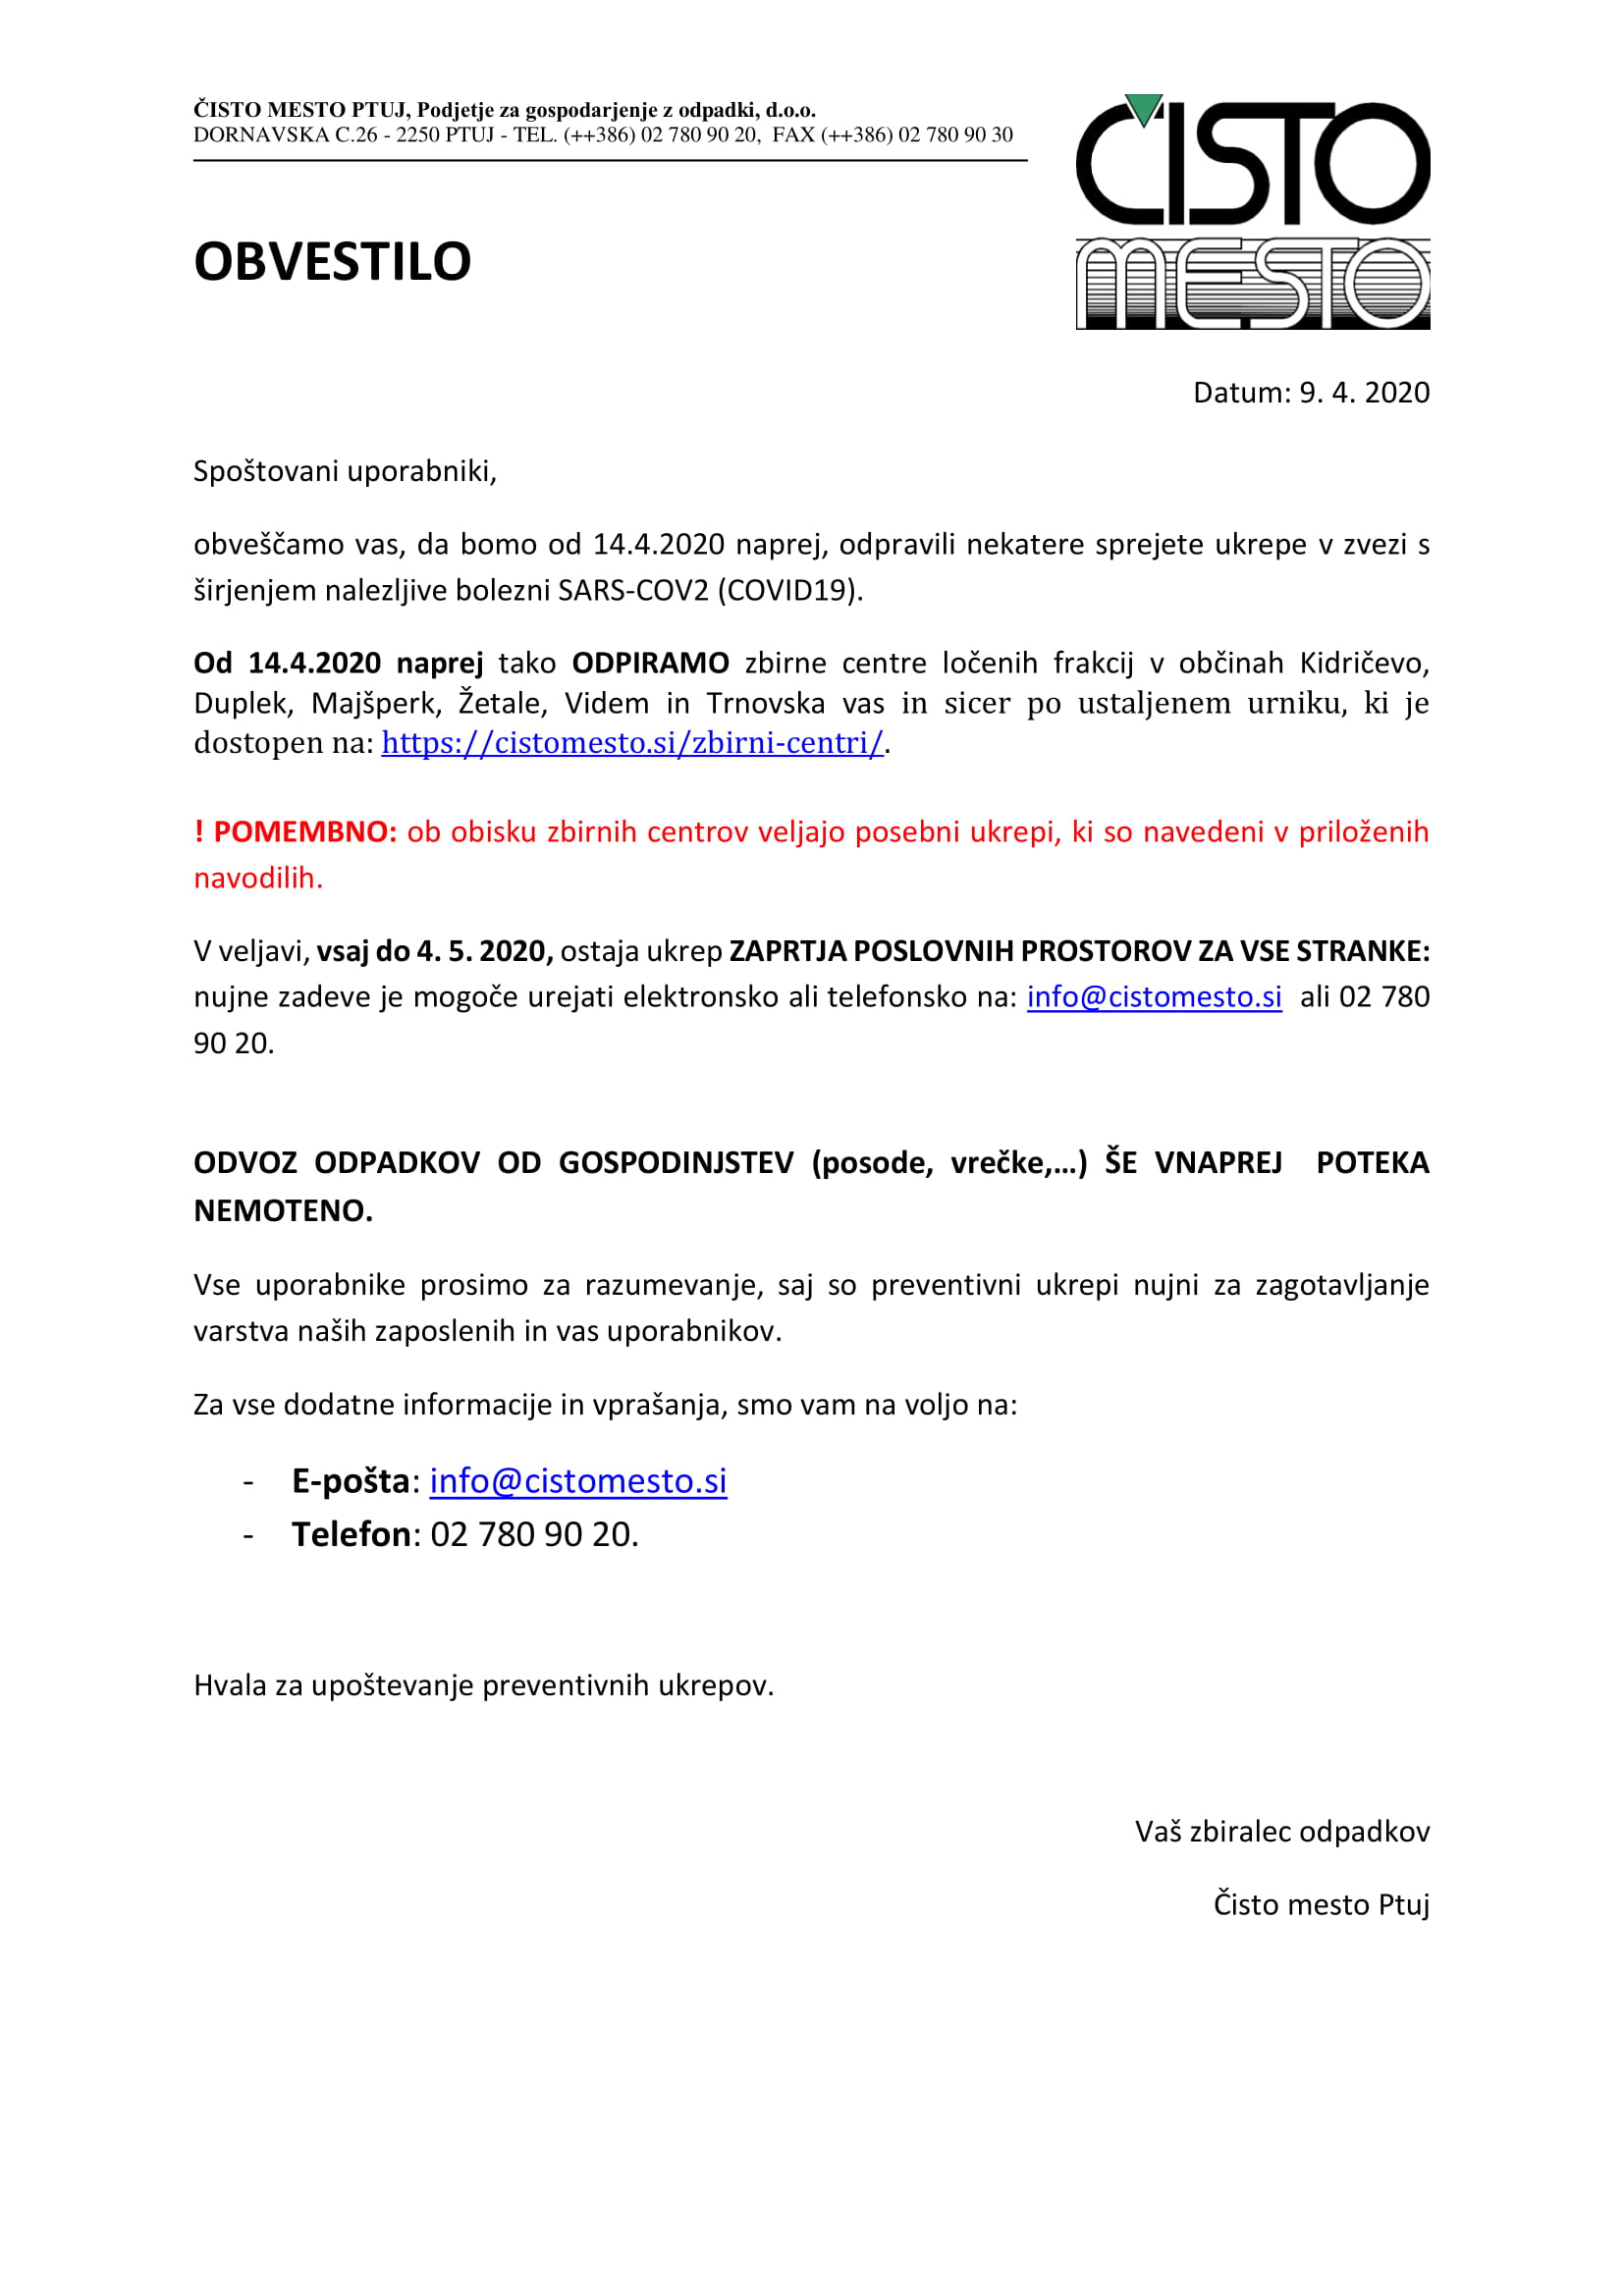 Posebno obvestilo_koronavirus_ČMP_april 2020_5 (9.4.2020)-1.jpg